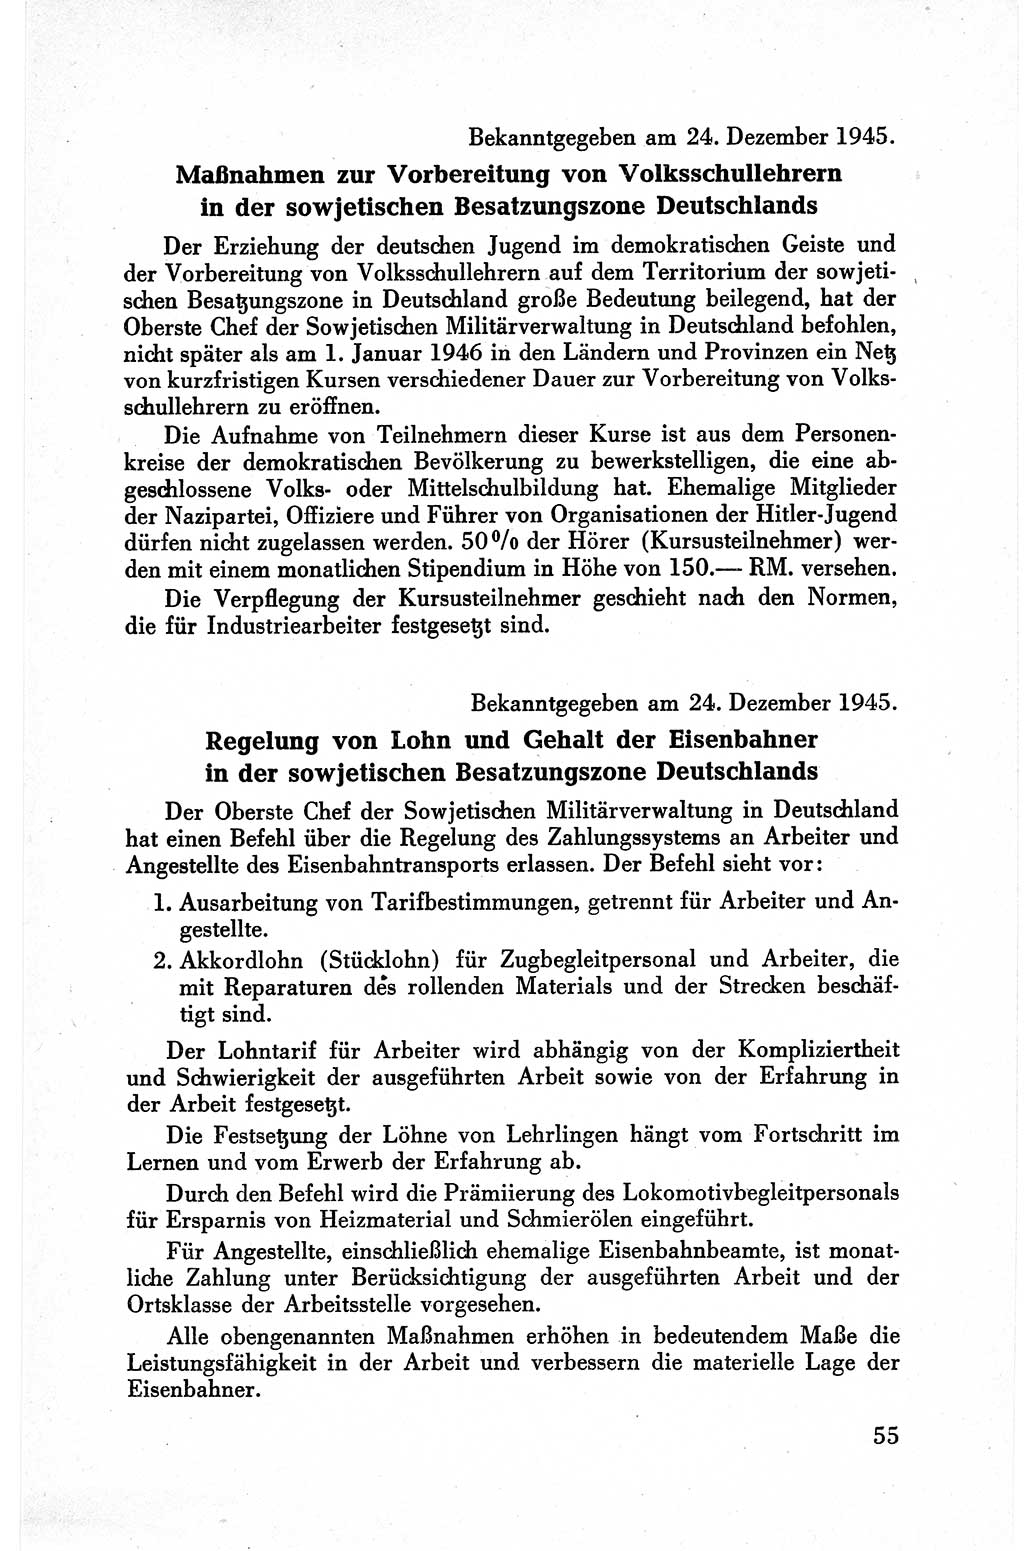 Befehle des Obersten Chefs der Sowjetischen Miltärverwaltung (SMV) in Deutschland - Aus dem Stab der Sowjetischen Militärverwaltung in Deutschland 1945, Seite 55 (Bef. SMV Dtl. 1945, S. 55)